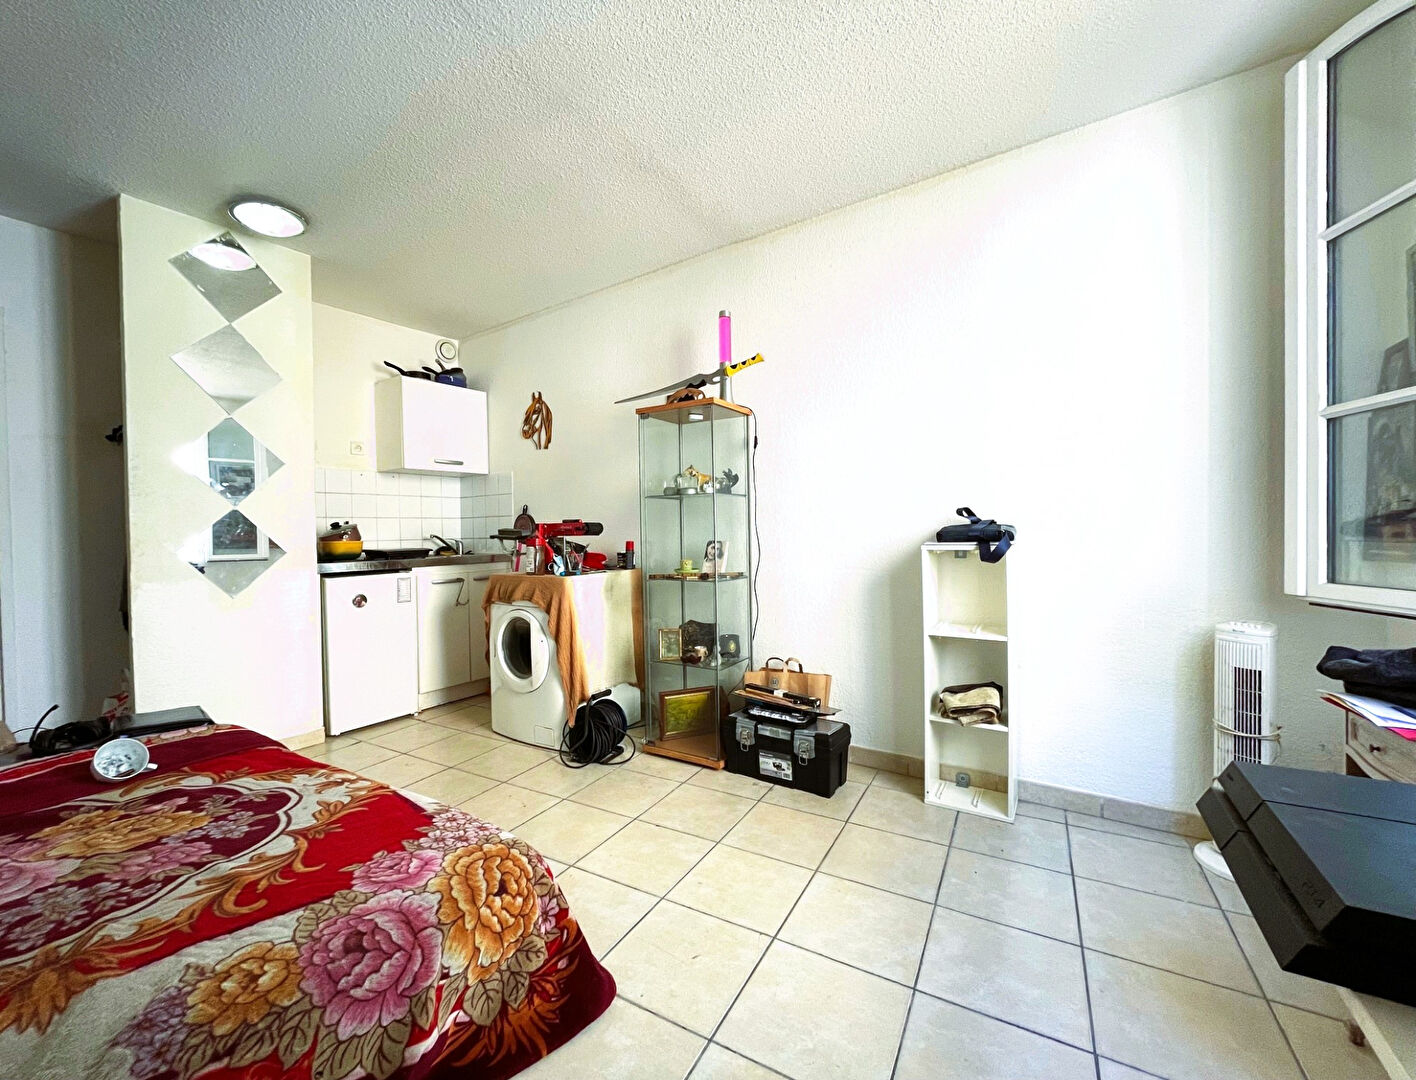 Vente Appartement 18 m² à Toulon 57 500 ¤